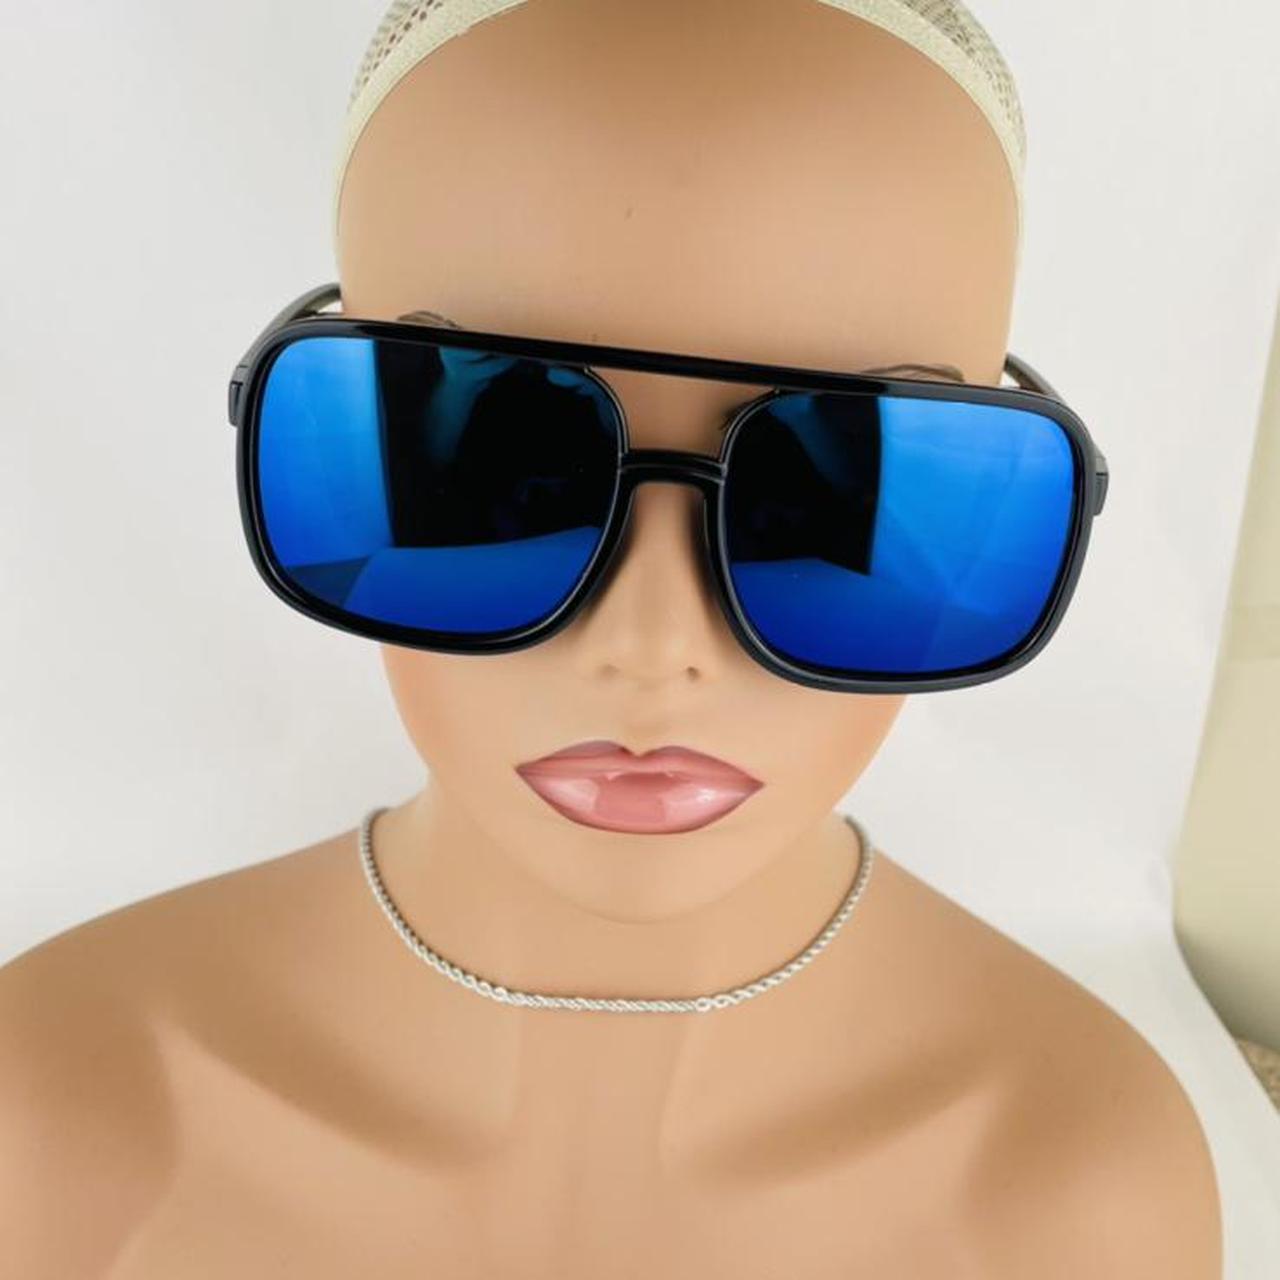 Women's Sunglasses (2)